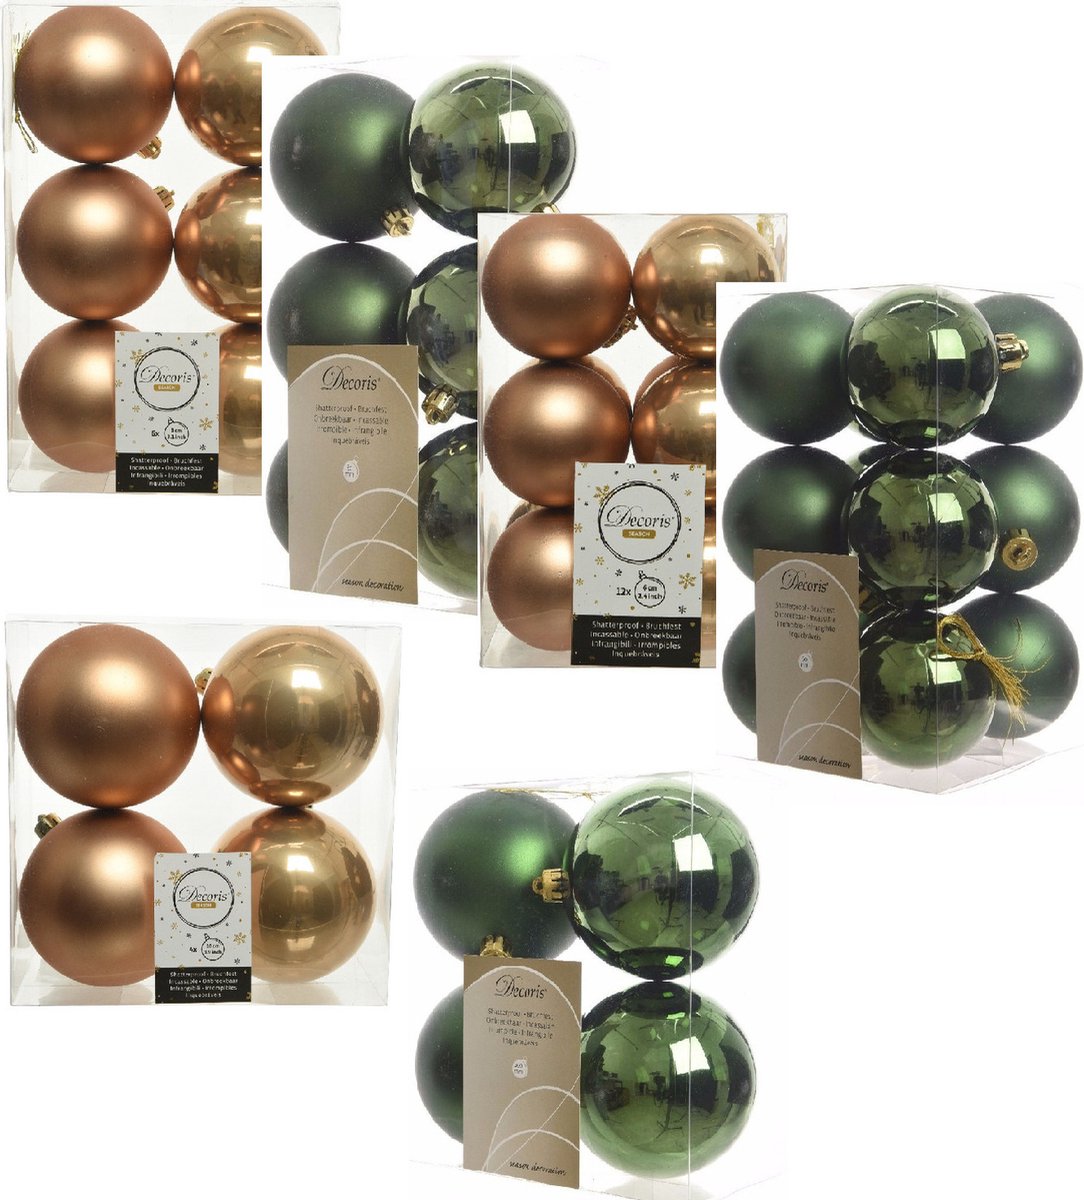 Kerstversiering kunststof kerstballen kleuren mix cognac/donkergroen 6-8-10 cm pakket van 44x stuks